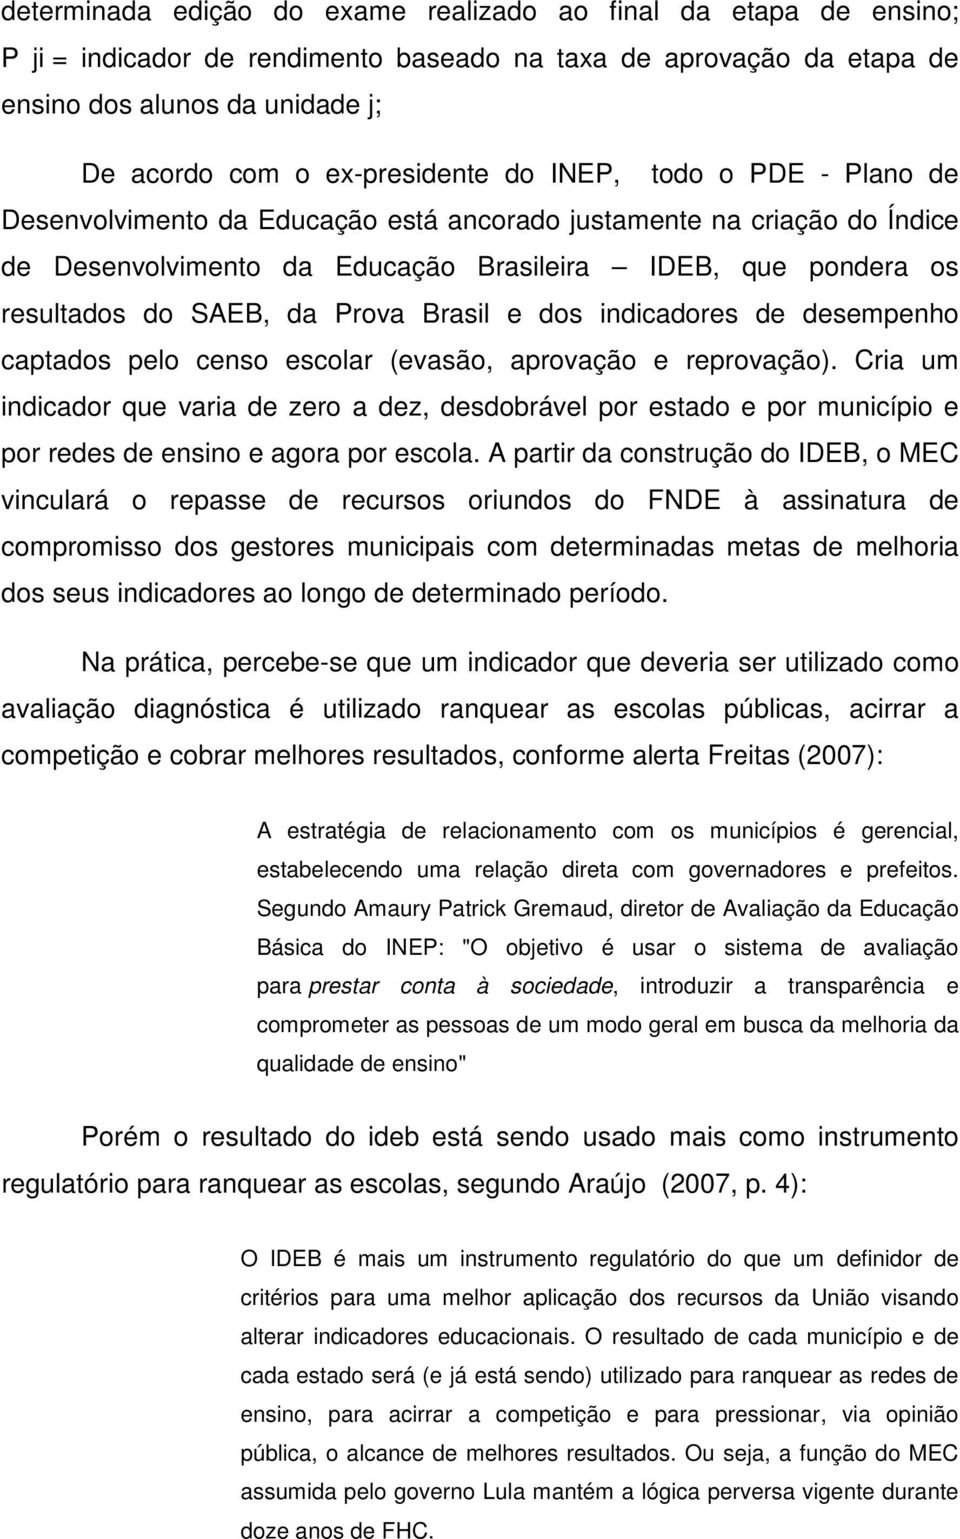 SAEB, da Prova Brasil e dos indicadores de desempenho captados pelo censo escolar (evasão, aprovação e reprovação).